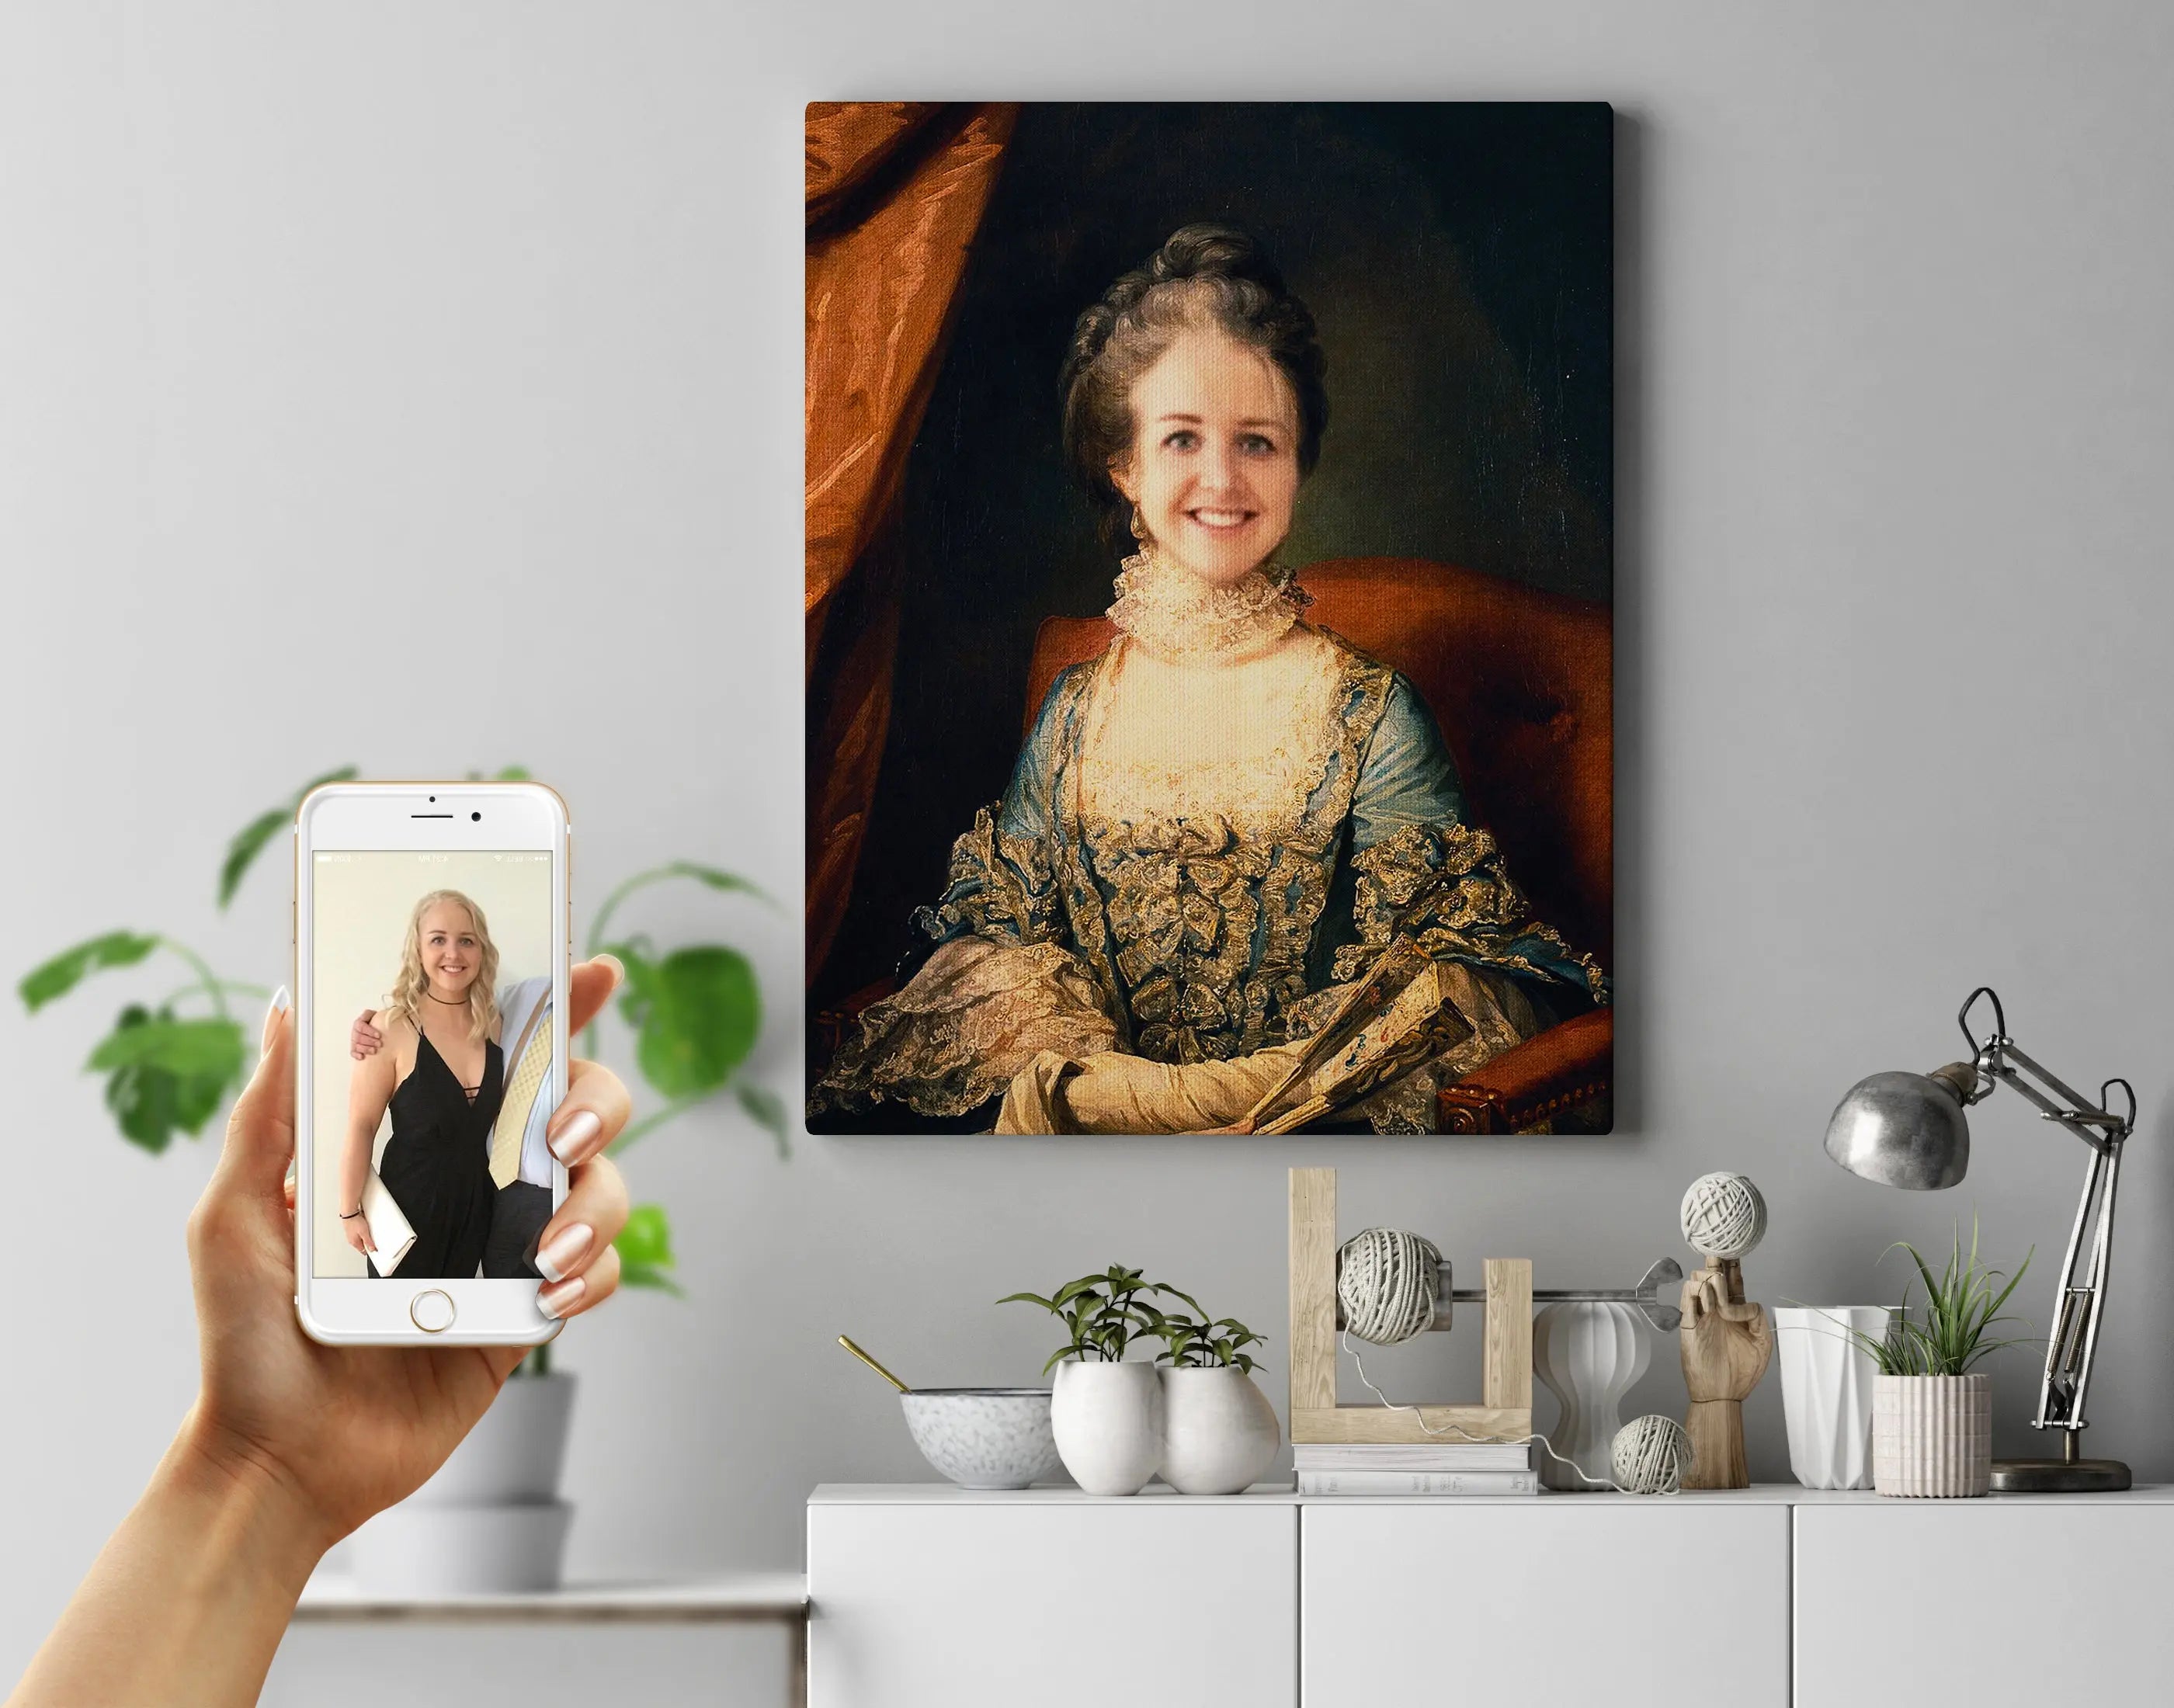 Sapphie Dronningen - Royal portræt efter dine fotos Just Karikatur